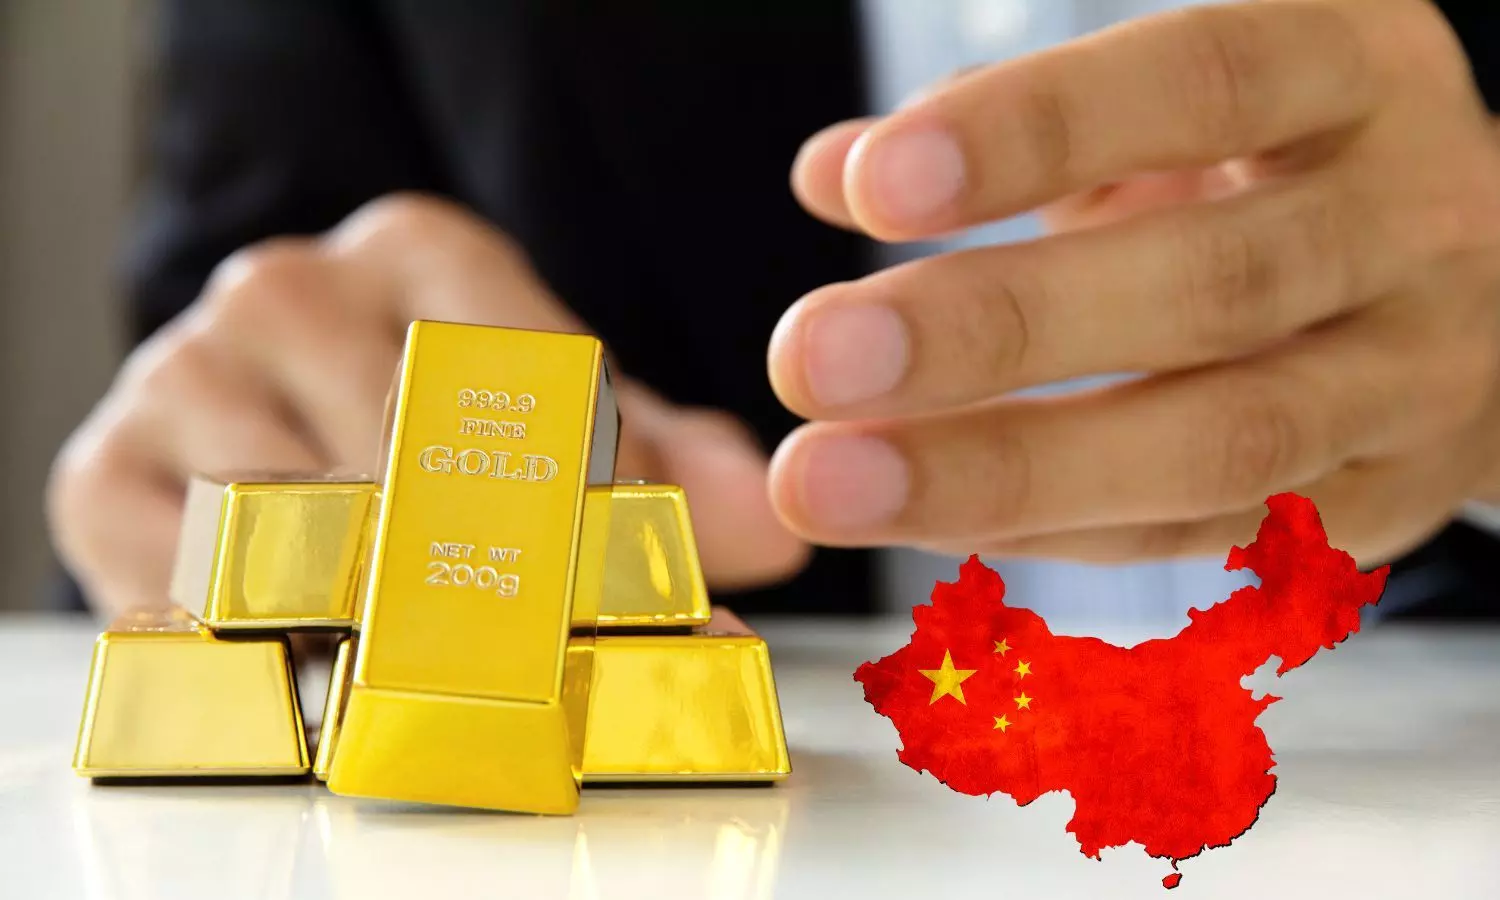 Gold bars, China map